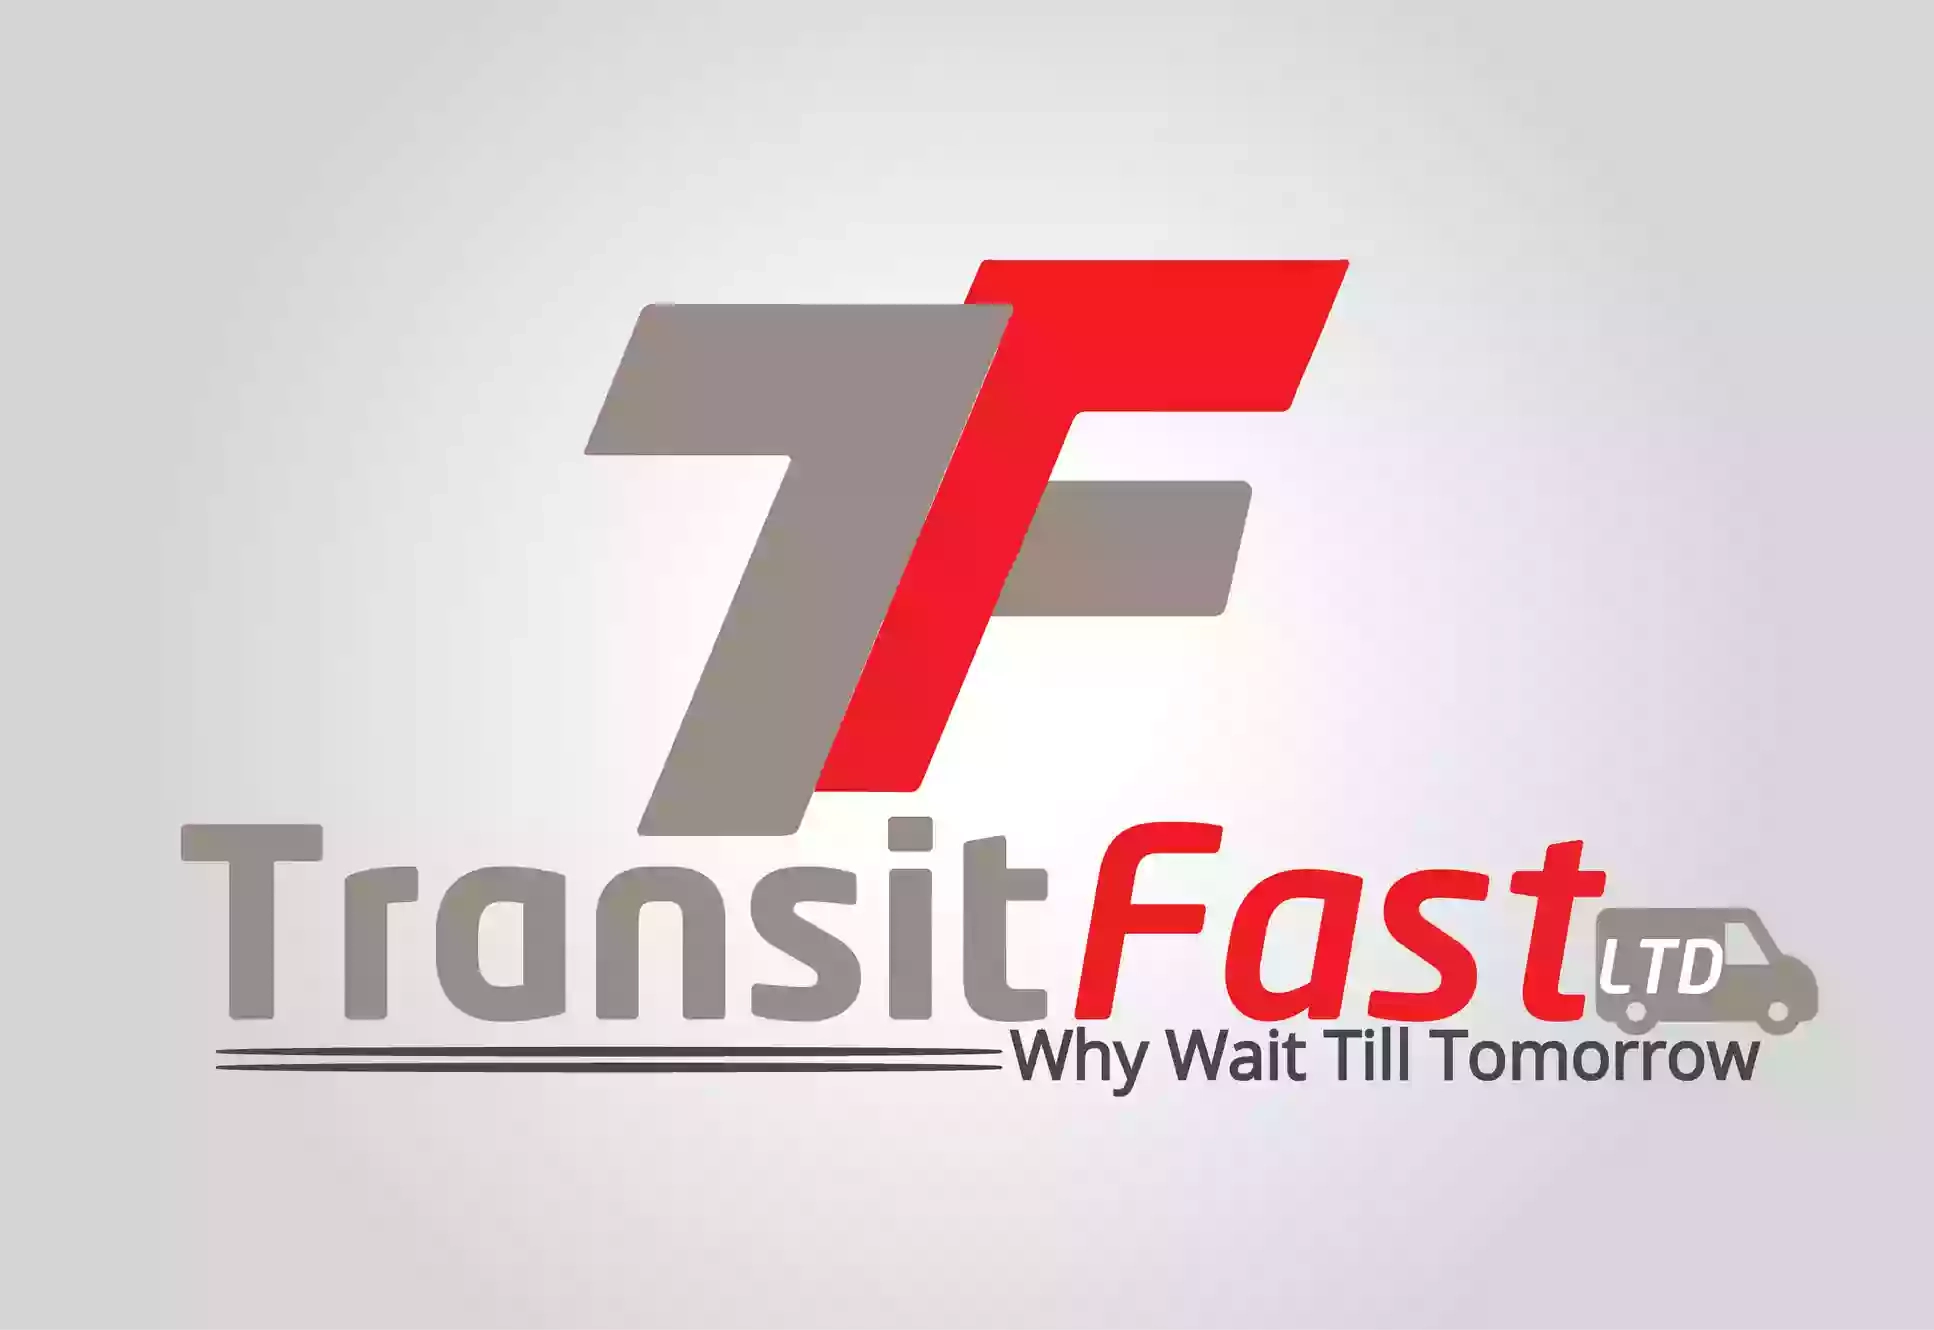 TransitFast Solutions Ltd